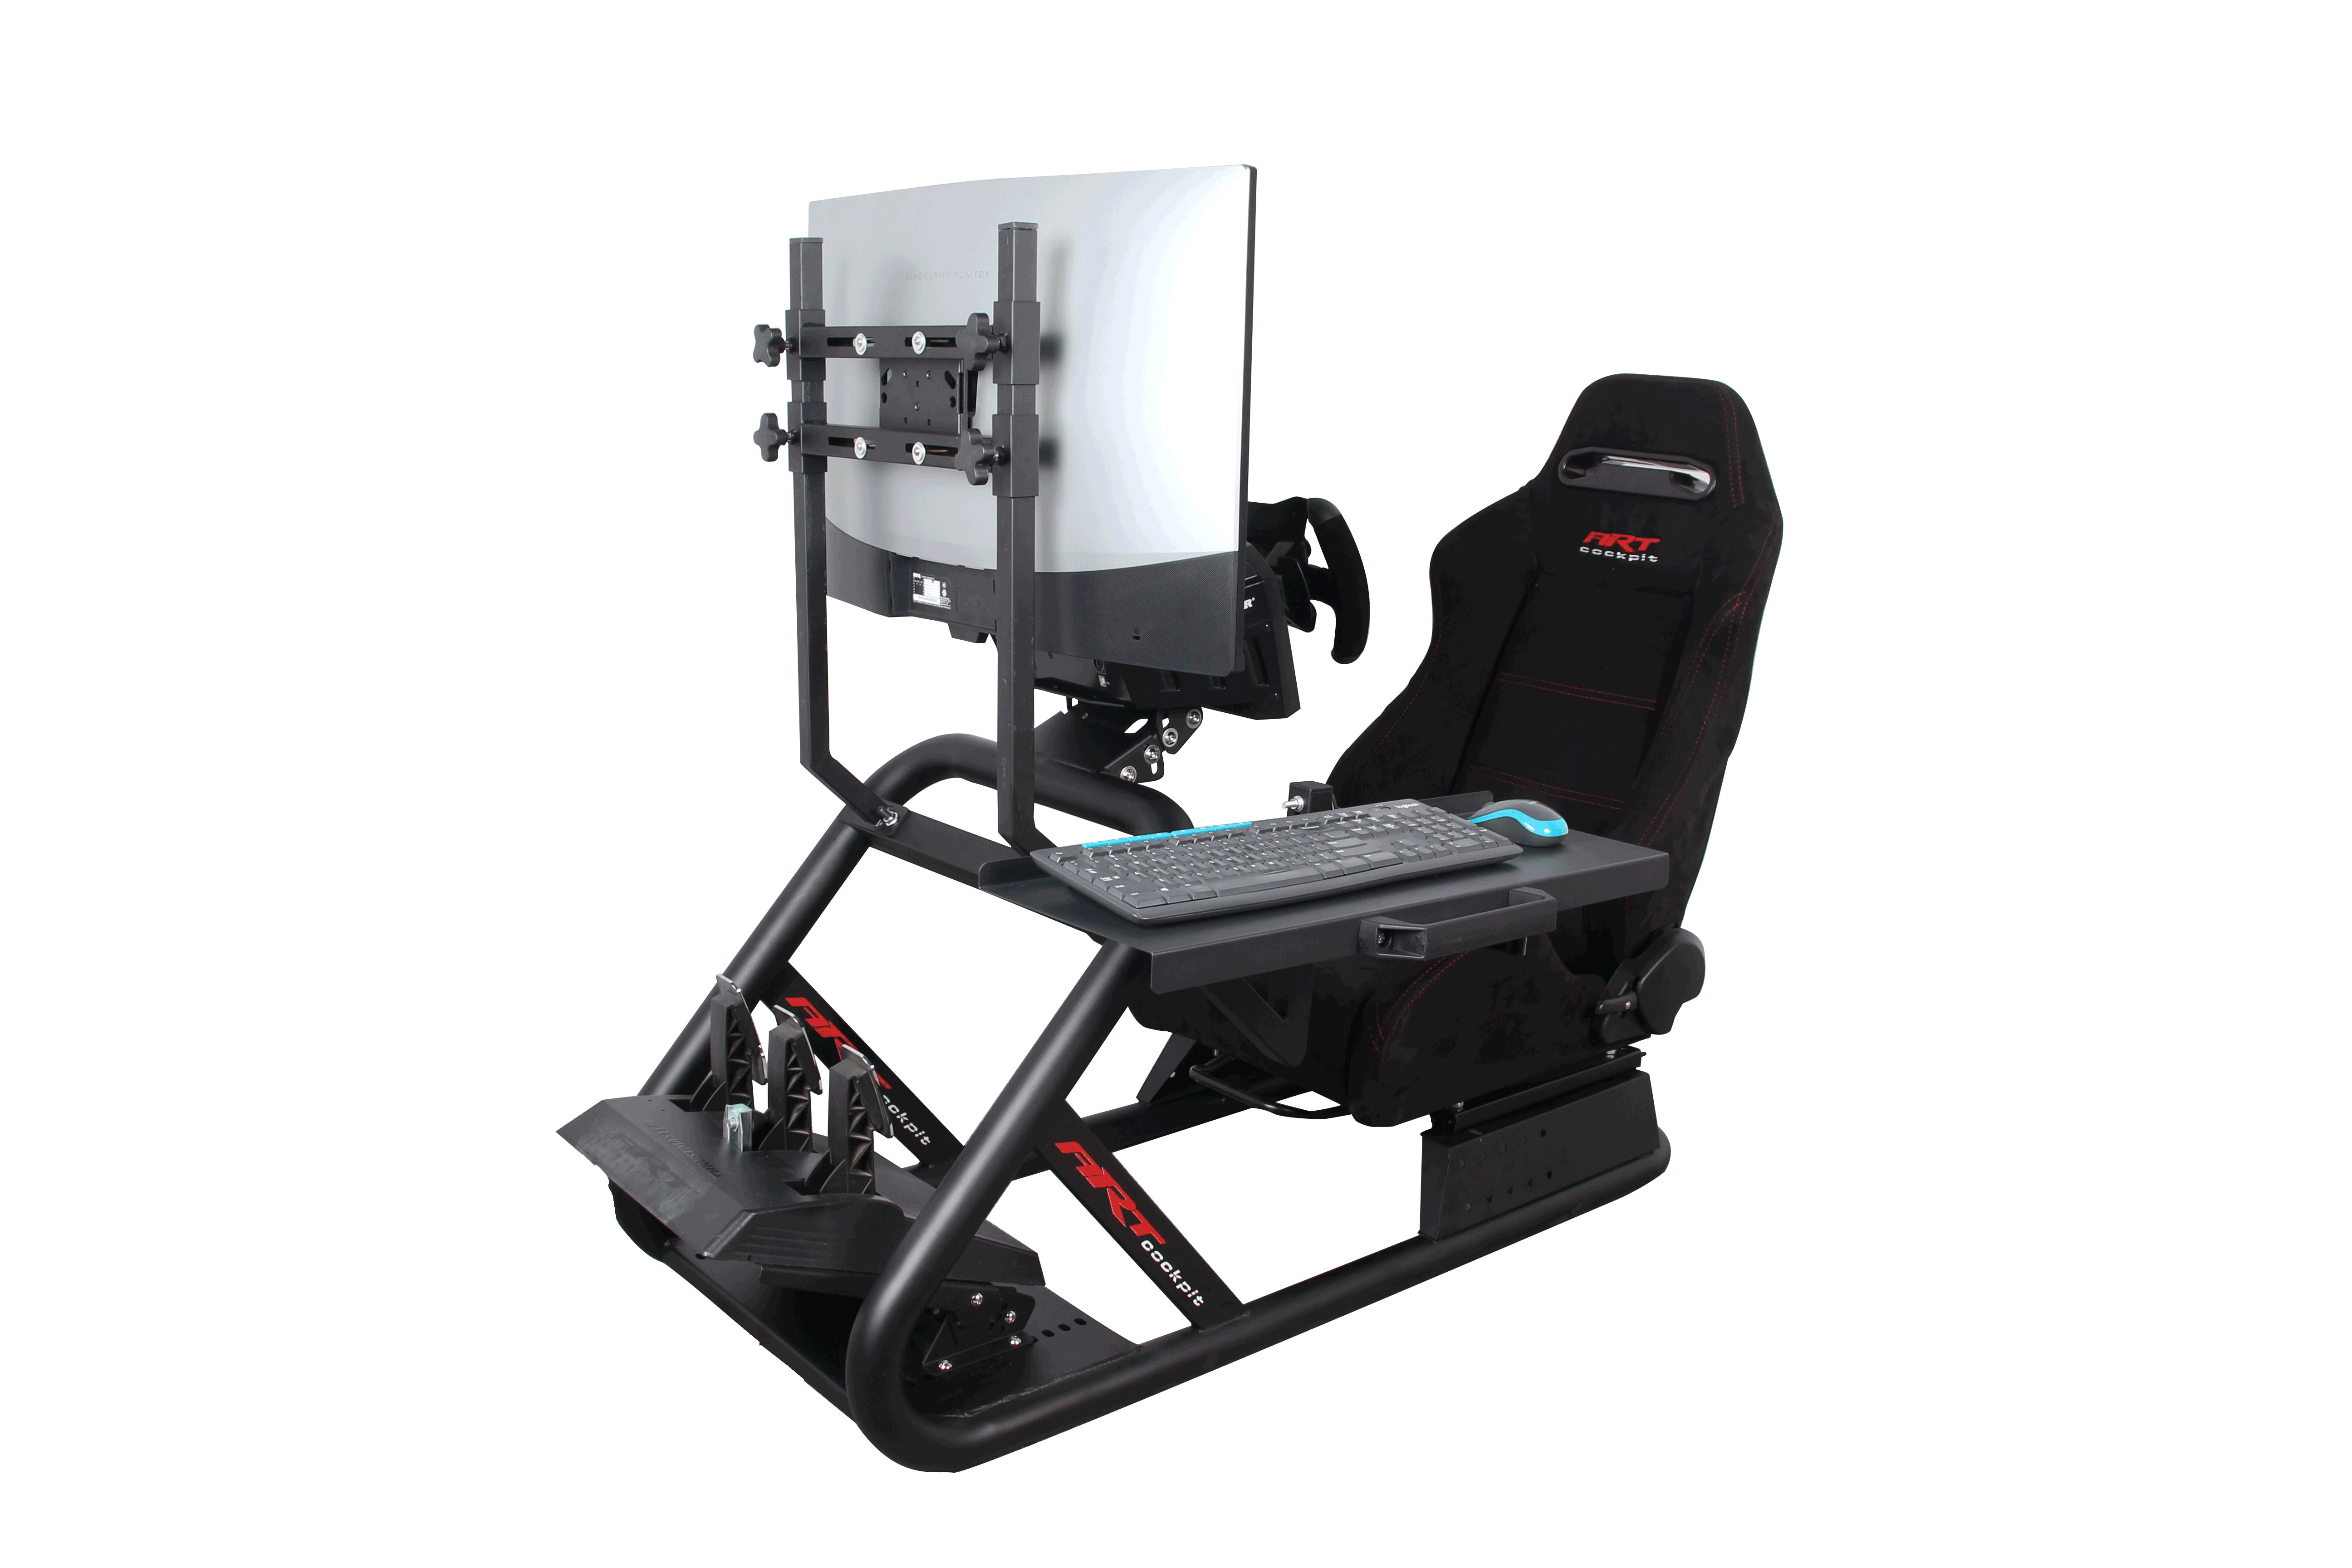 ARTcockpit PRO版座椅支架安装显示器挂架